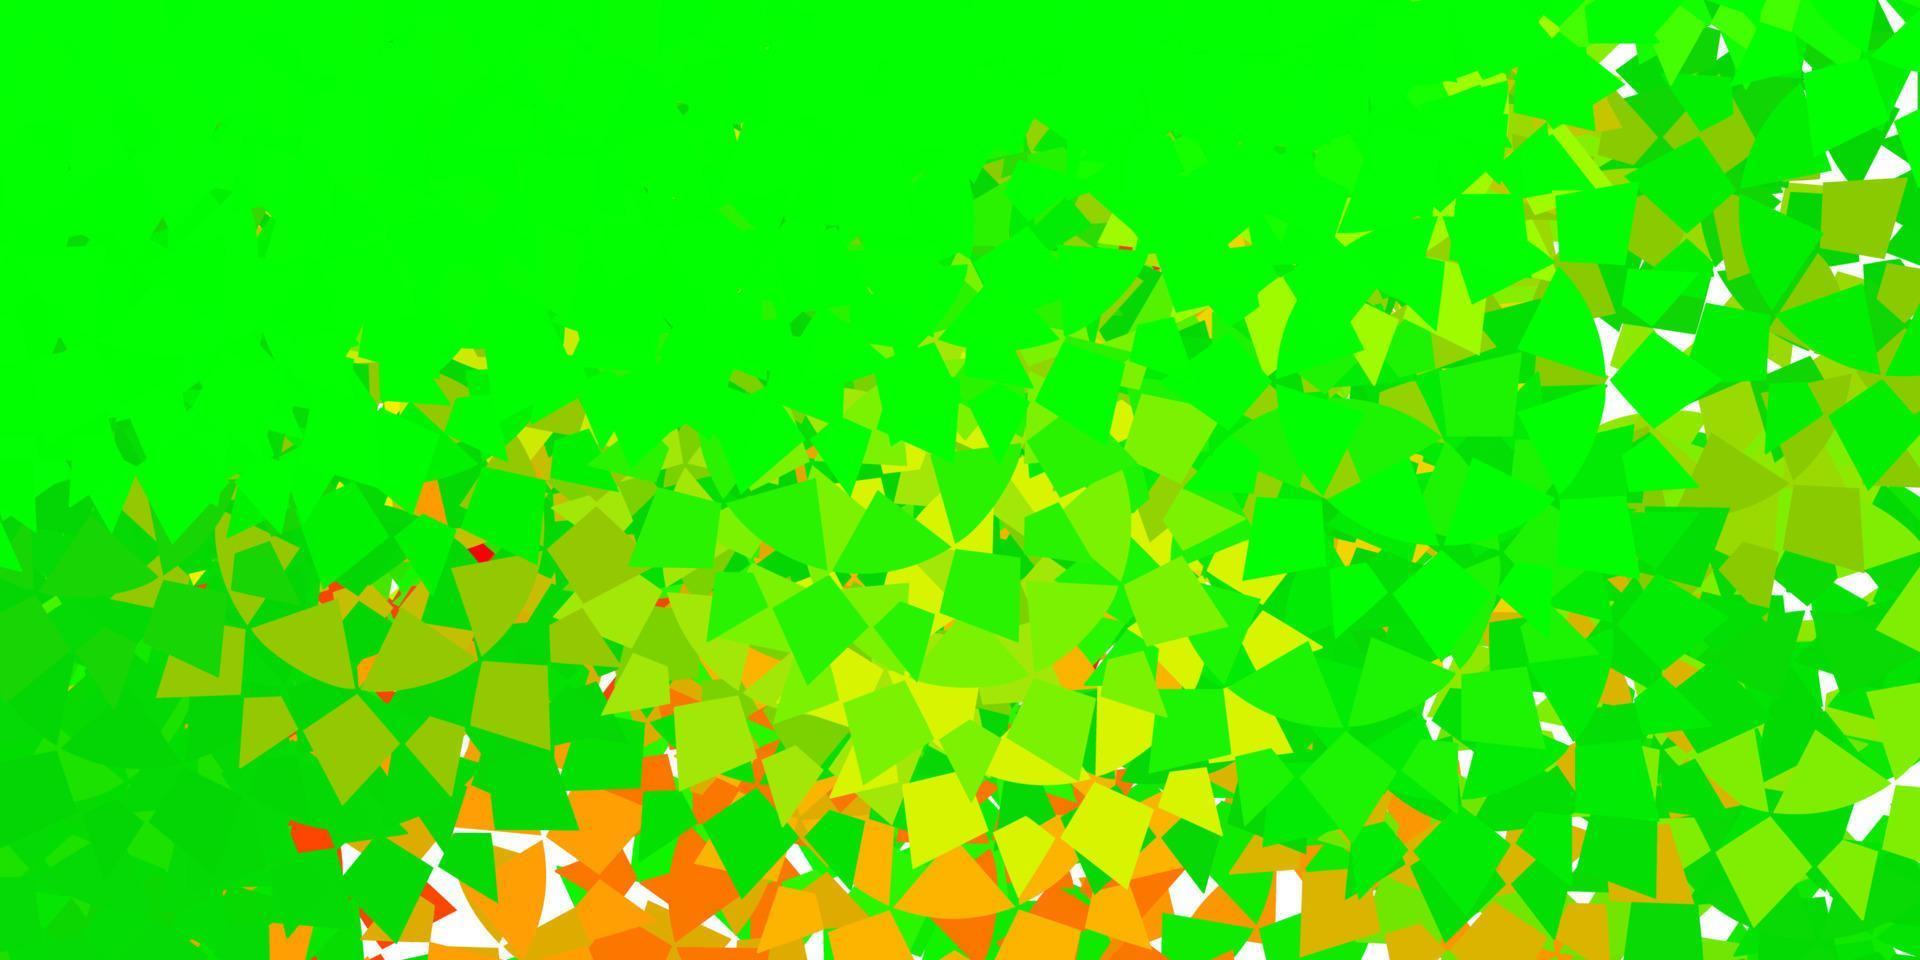 textura de vector verde oscuro con triángulos al azar.